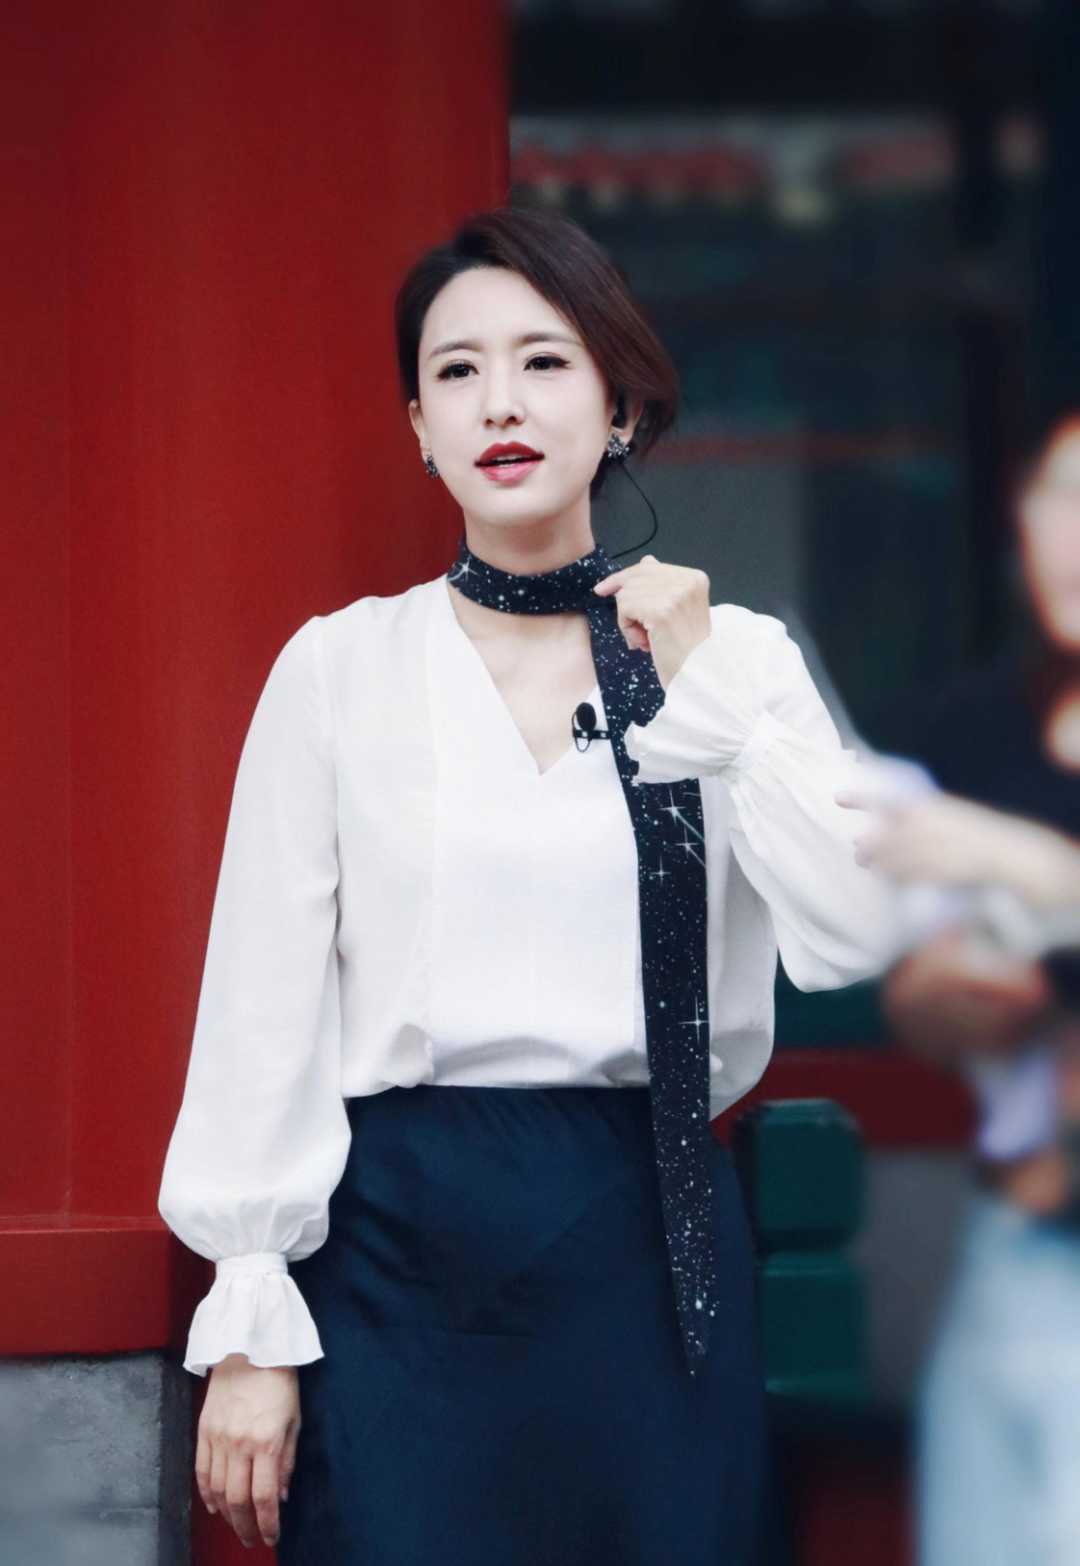 张蕾是优雅女性穿搭楷模，白衬衫配丝巾高级大气，教科书般气质